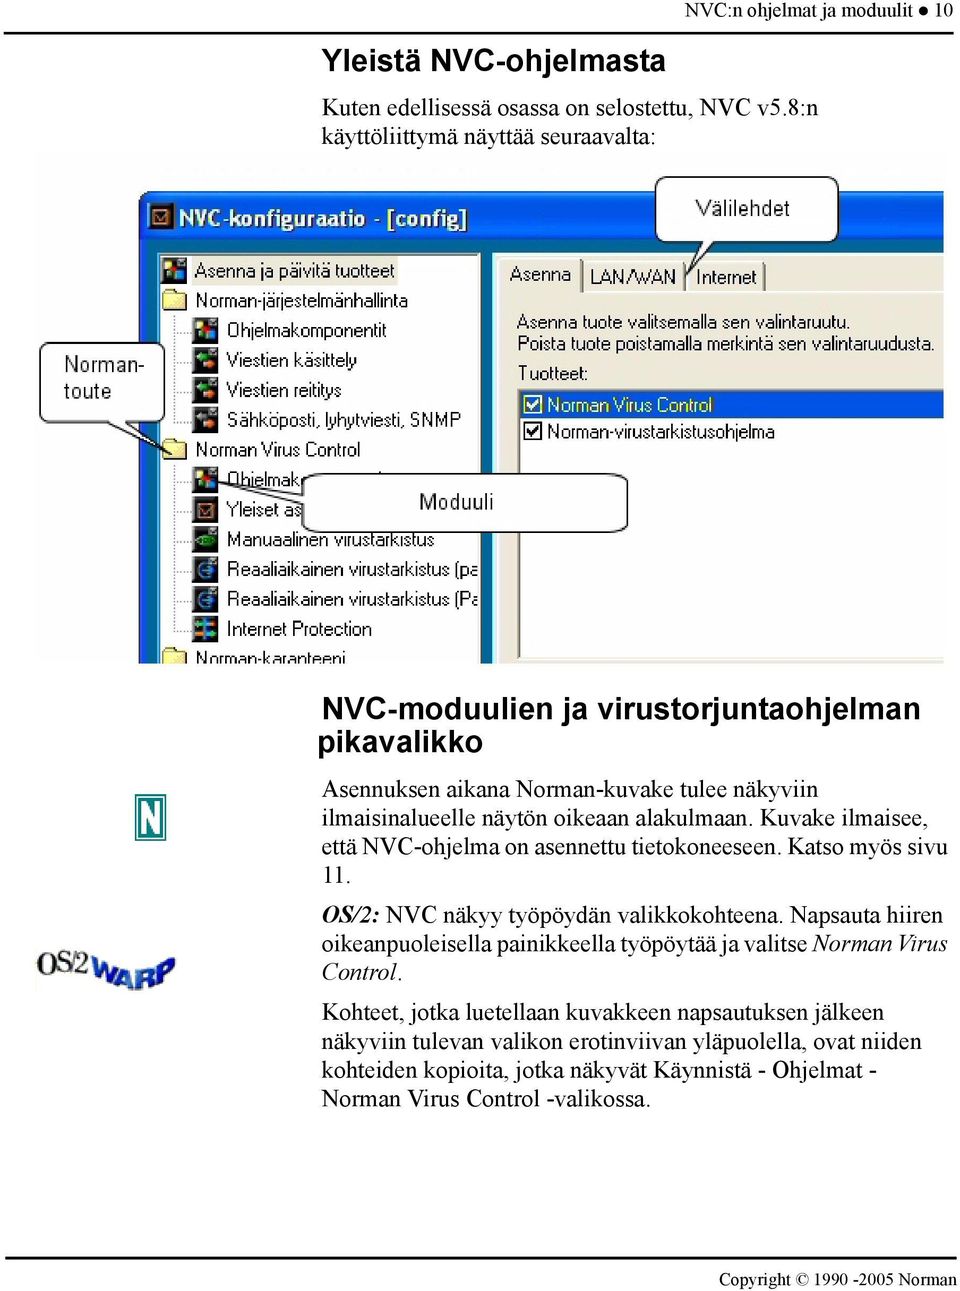 ilmaisinalueelle näytön oikeaan alakulmaan. Kuvake ilmaisee, että NVC-ohjelma on asennettu tietokoneeseen. Katso myös sivu 11. OS/2: NVC näkyy työpöydän valikkokohteena.